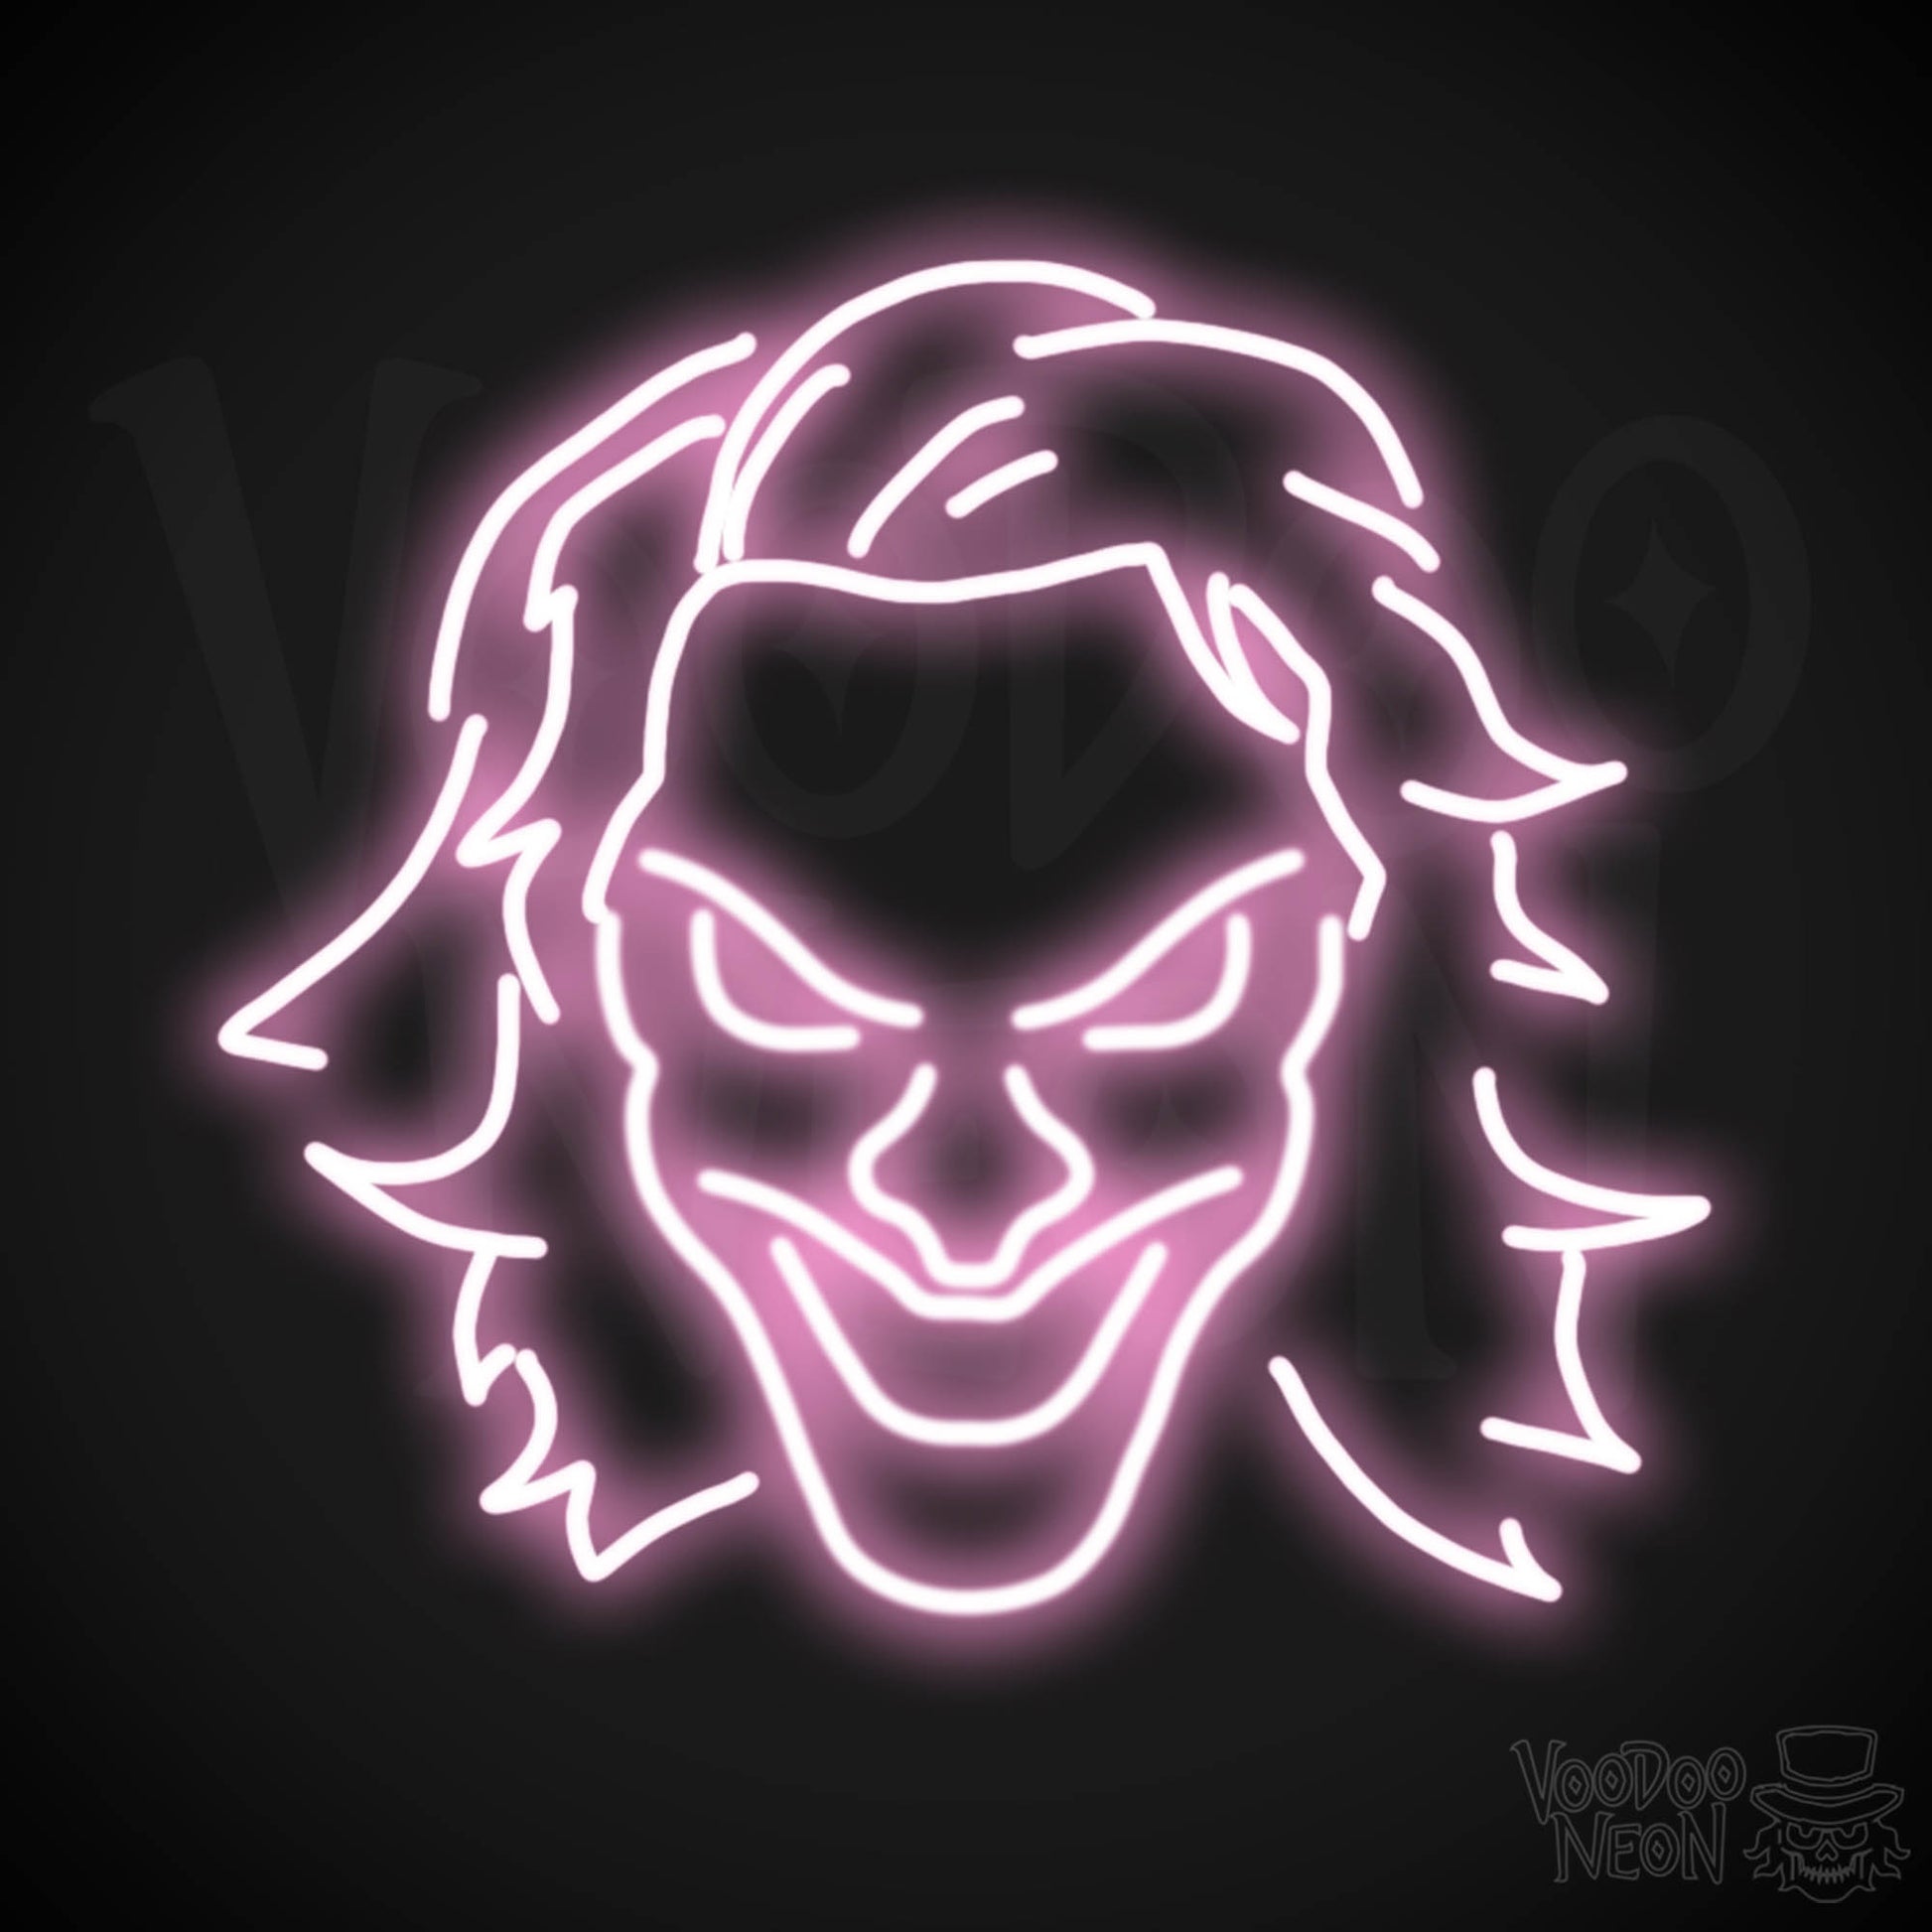 Joker Neon Sign - Neon Joker Sign - Joker LED Wall Art - Color Light Pink